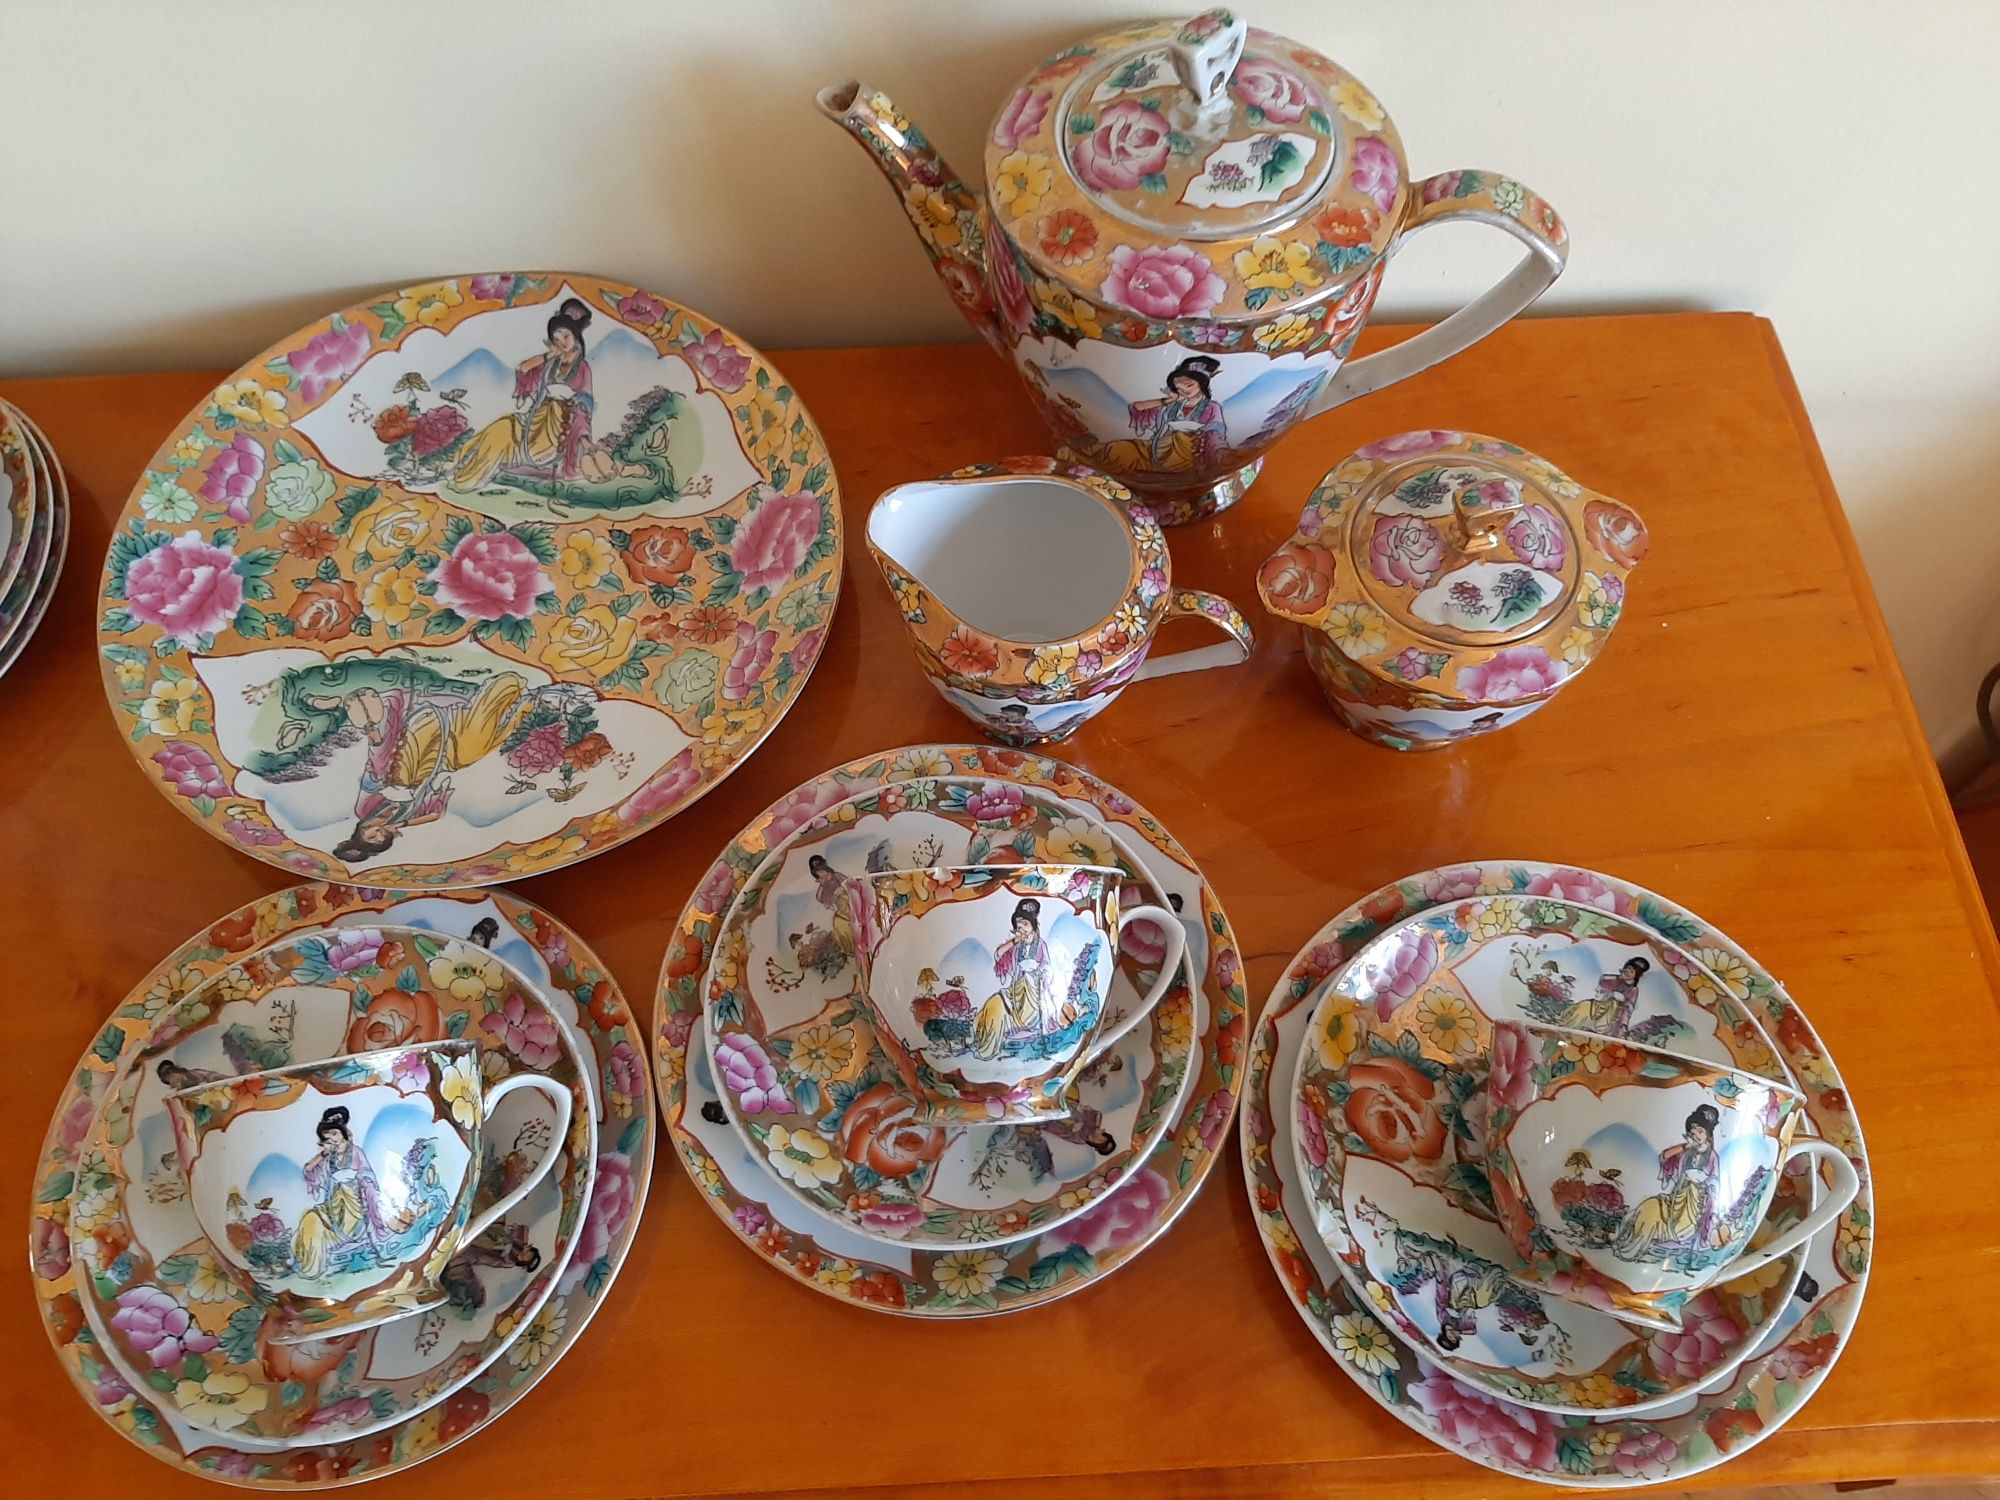 Serwis do herbaty kawy 3 osoby chiński vintage kolekcje